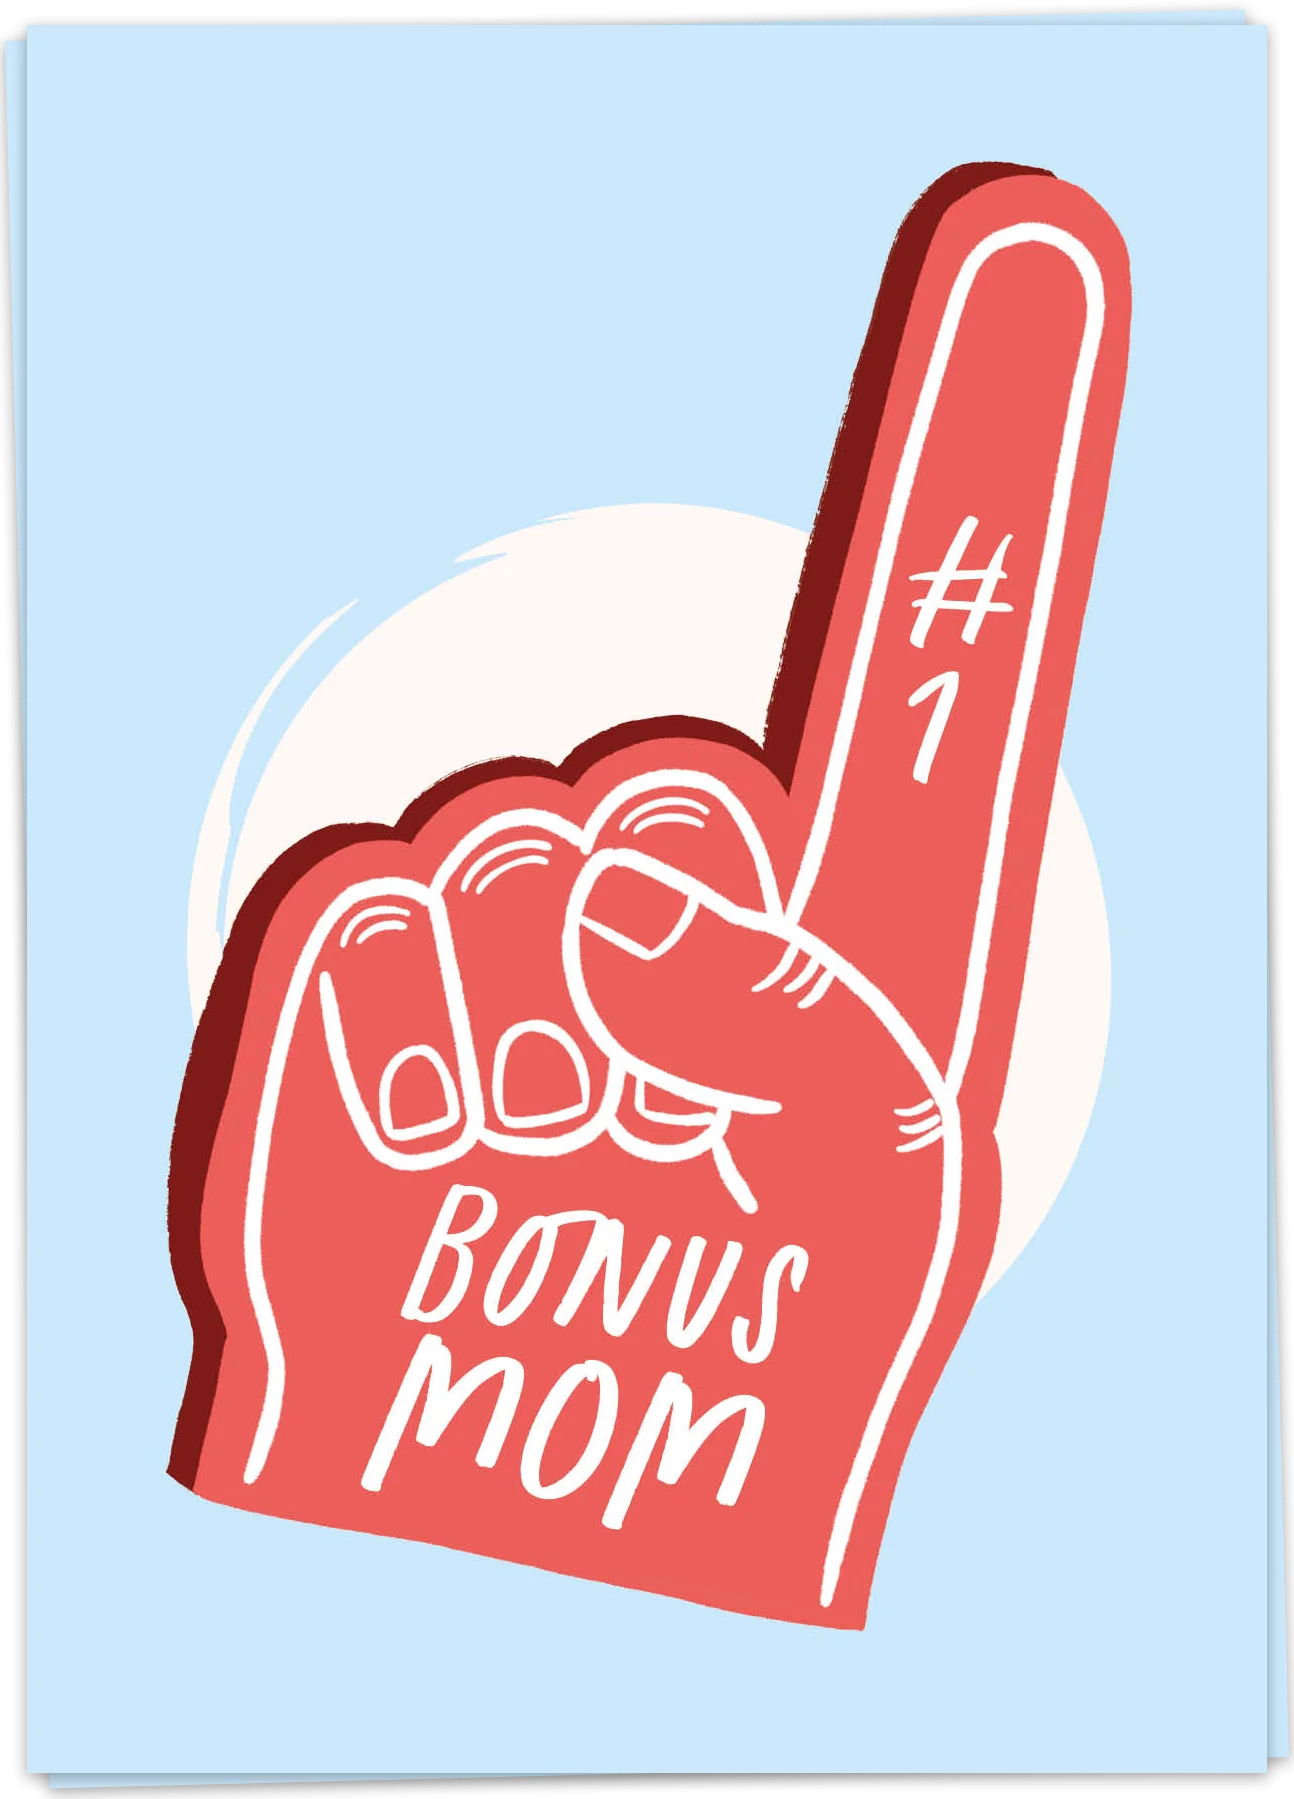 Number one bonus mom